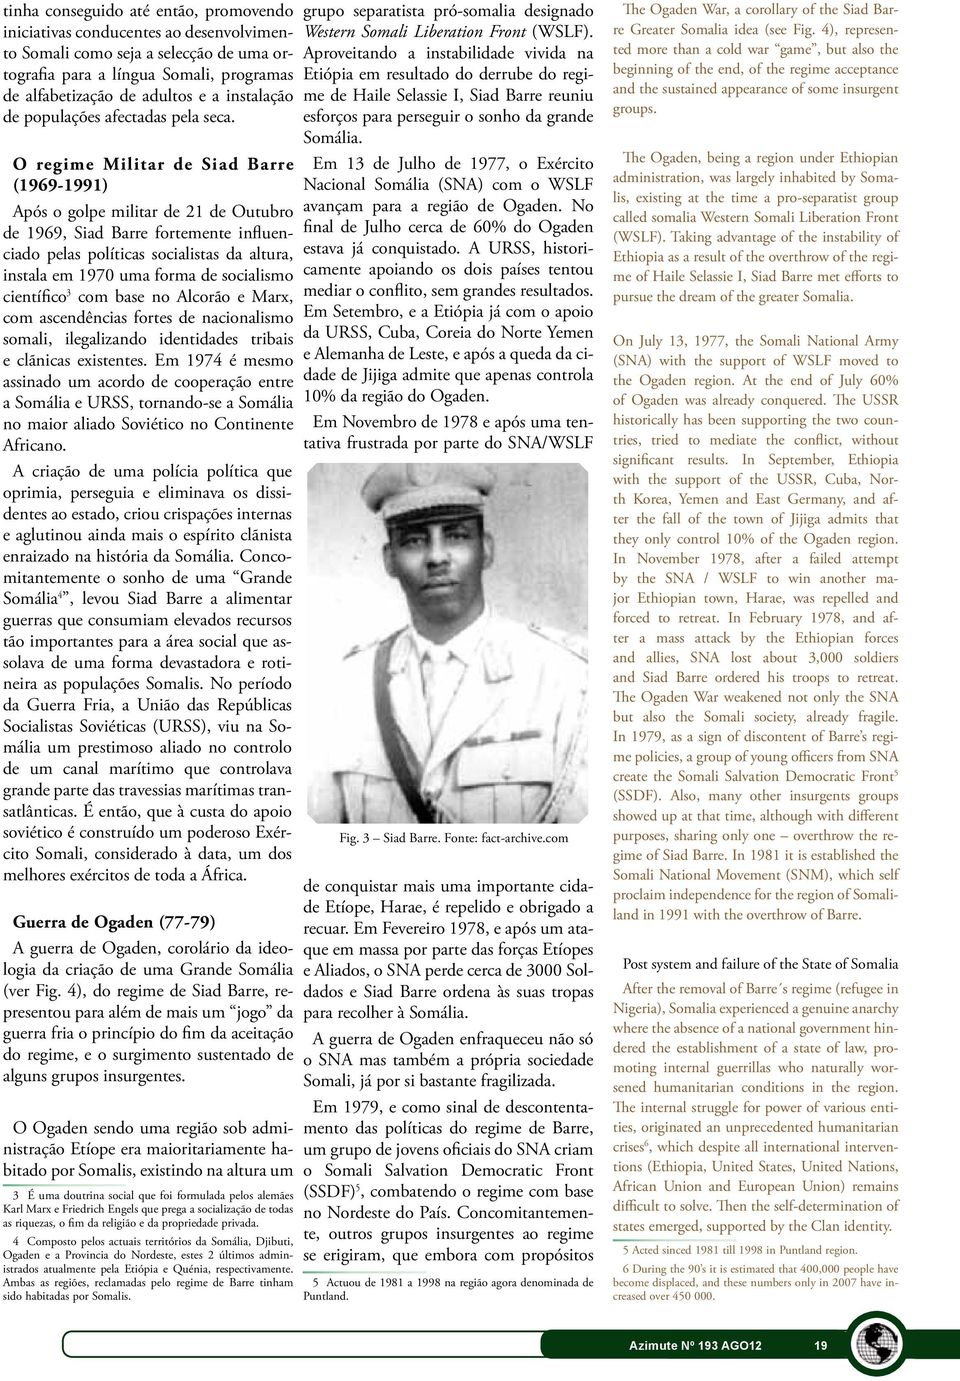 O regime Militar de Siad Barre (1969-1991) Após o golpe militar de 21 de Outubro de 1969, Siad Barre fortemente influenciado pelas políticas socialistas da altura, instala em 1970 uma forma de